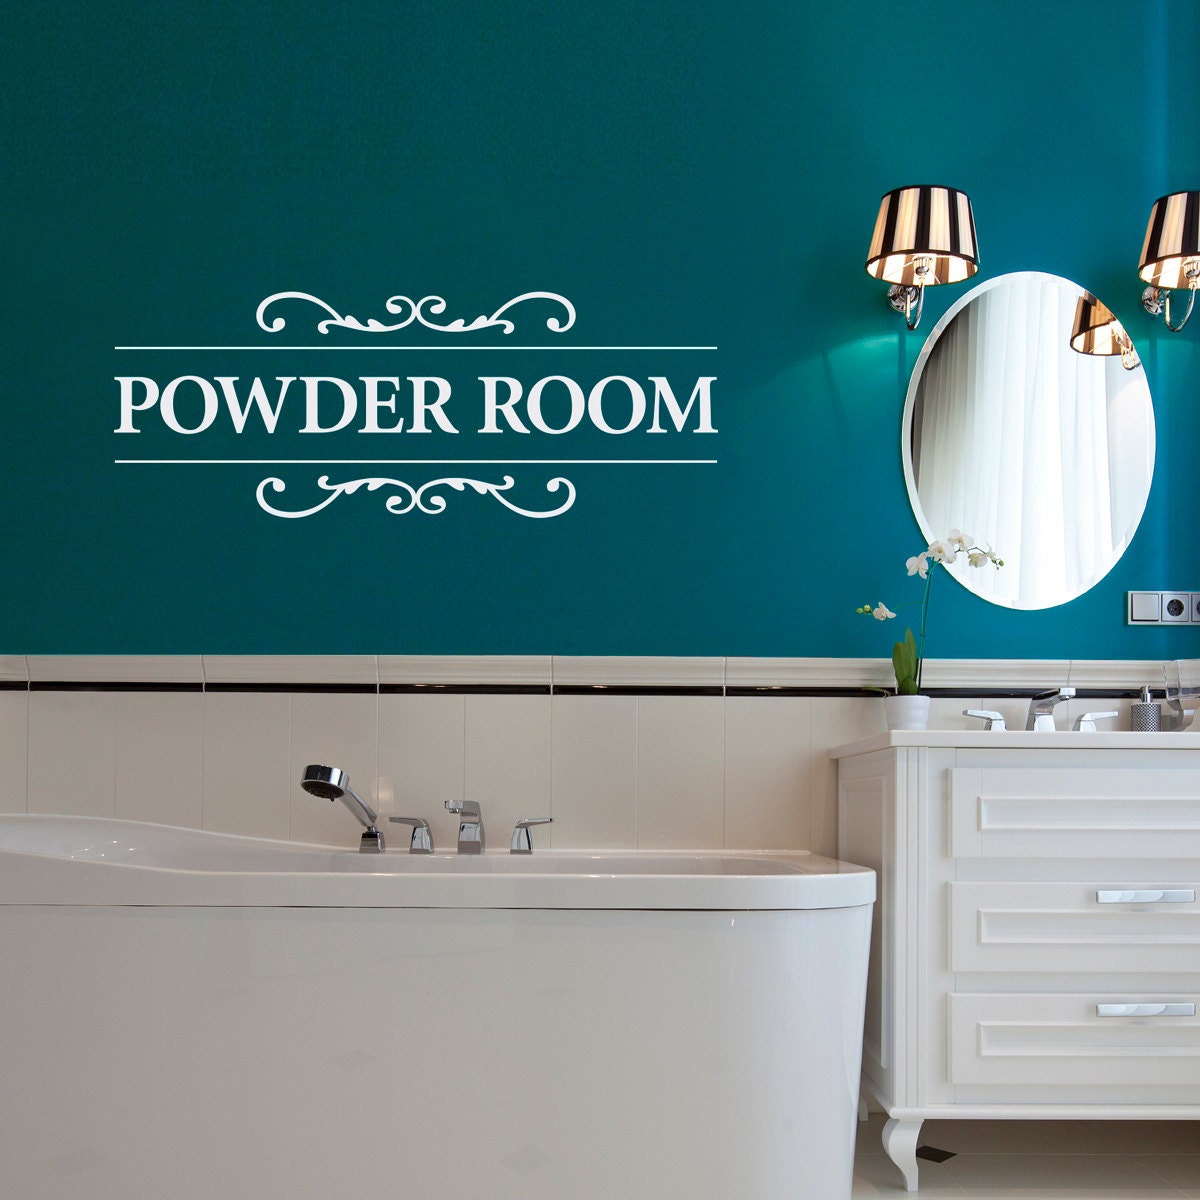 Powder Room Wall Decal - Bathroom Decal - Powder Room Wall Sticker - Large